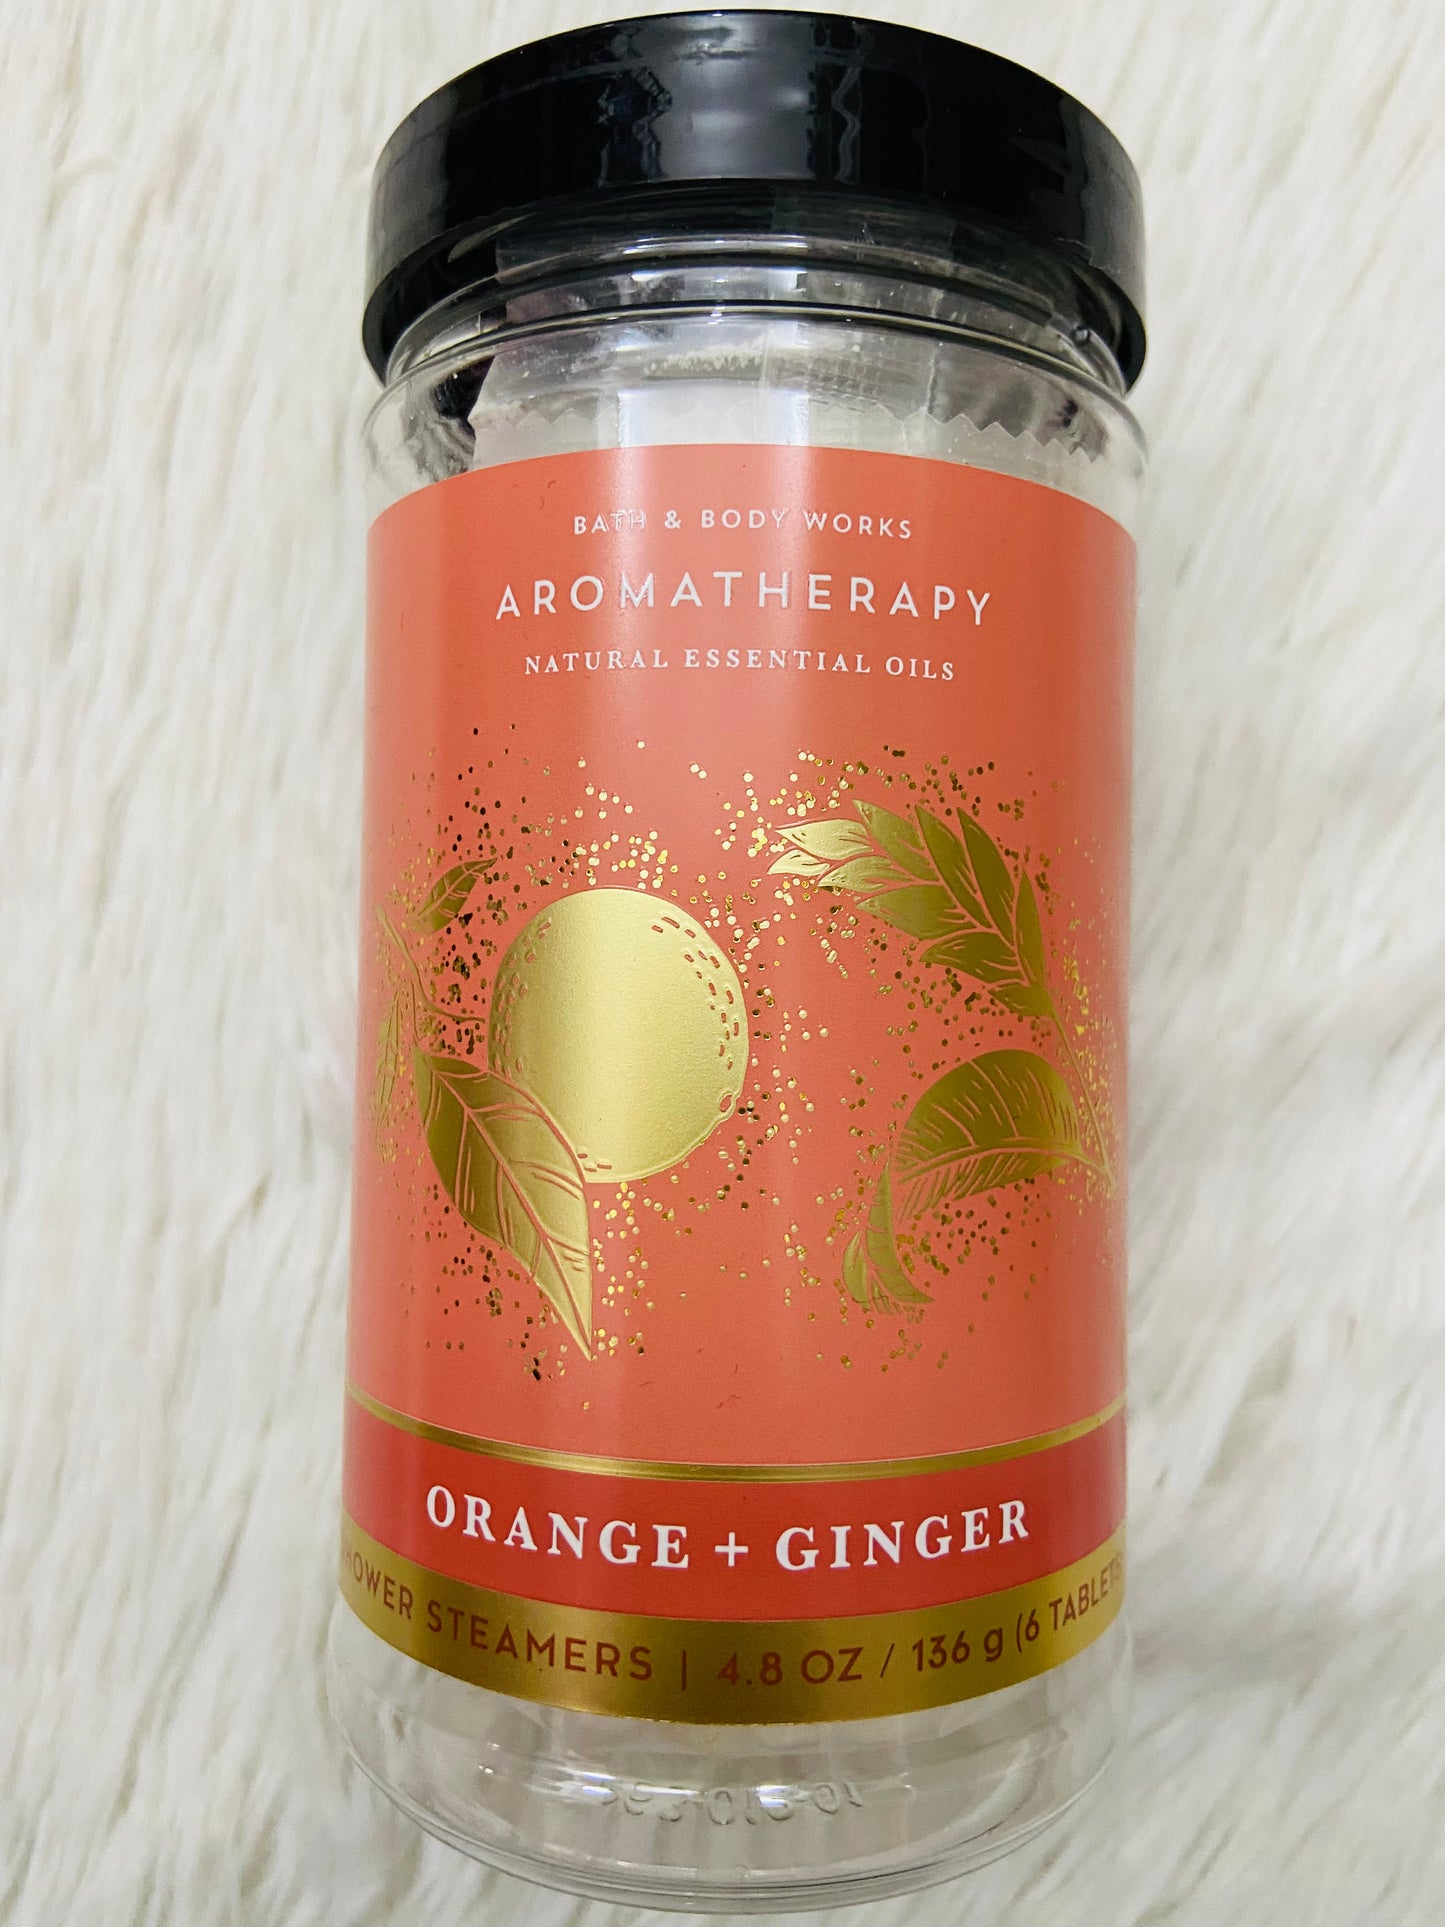 Bombas Aromáticas para ducha BATH & BODY WORKS original, aromatherapy naranja y jengibre con aceites naturales y esenciales  orange + ginger, 6 tabletas.